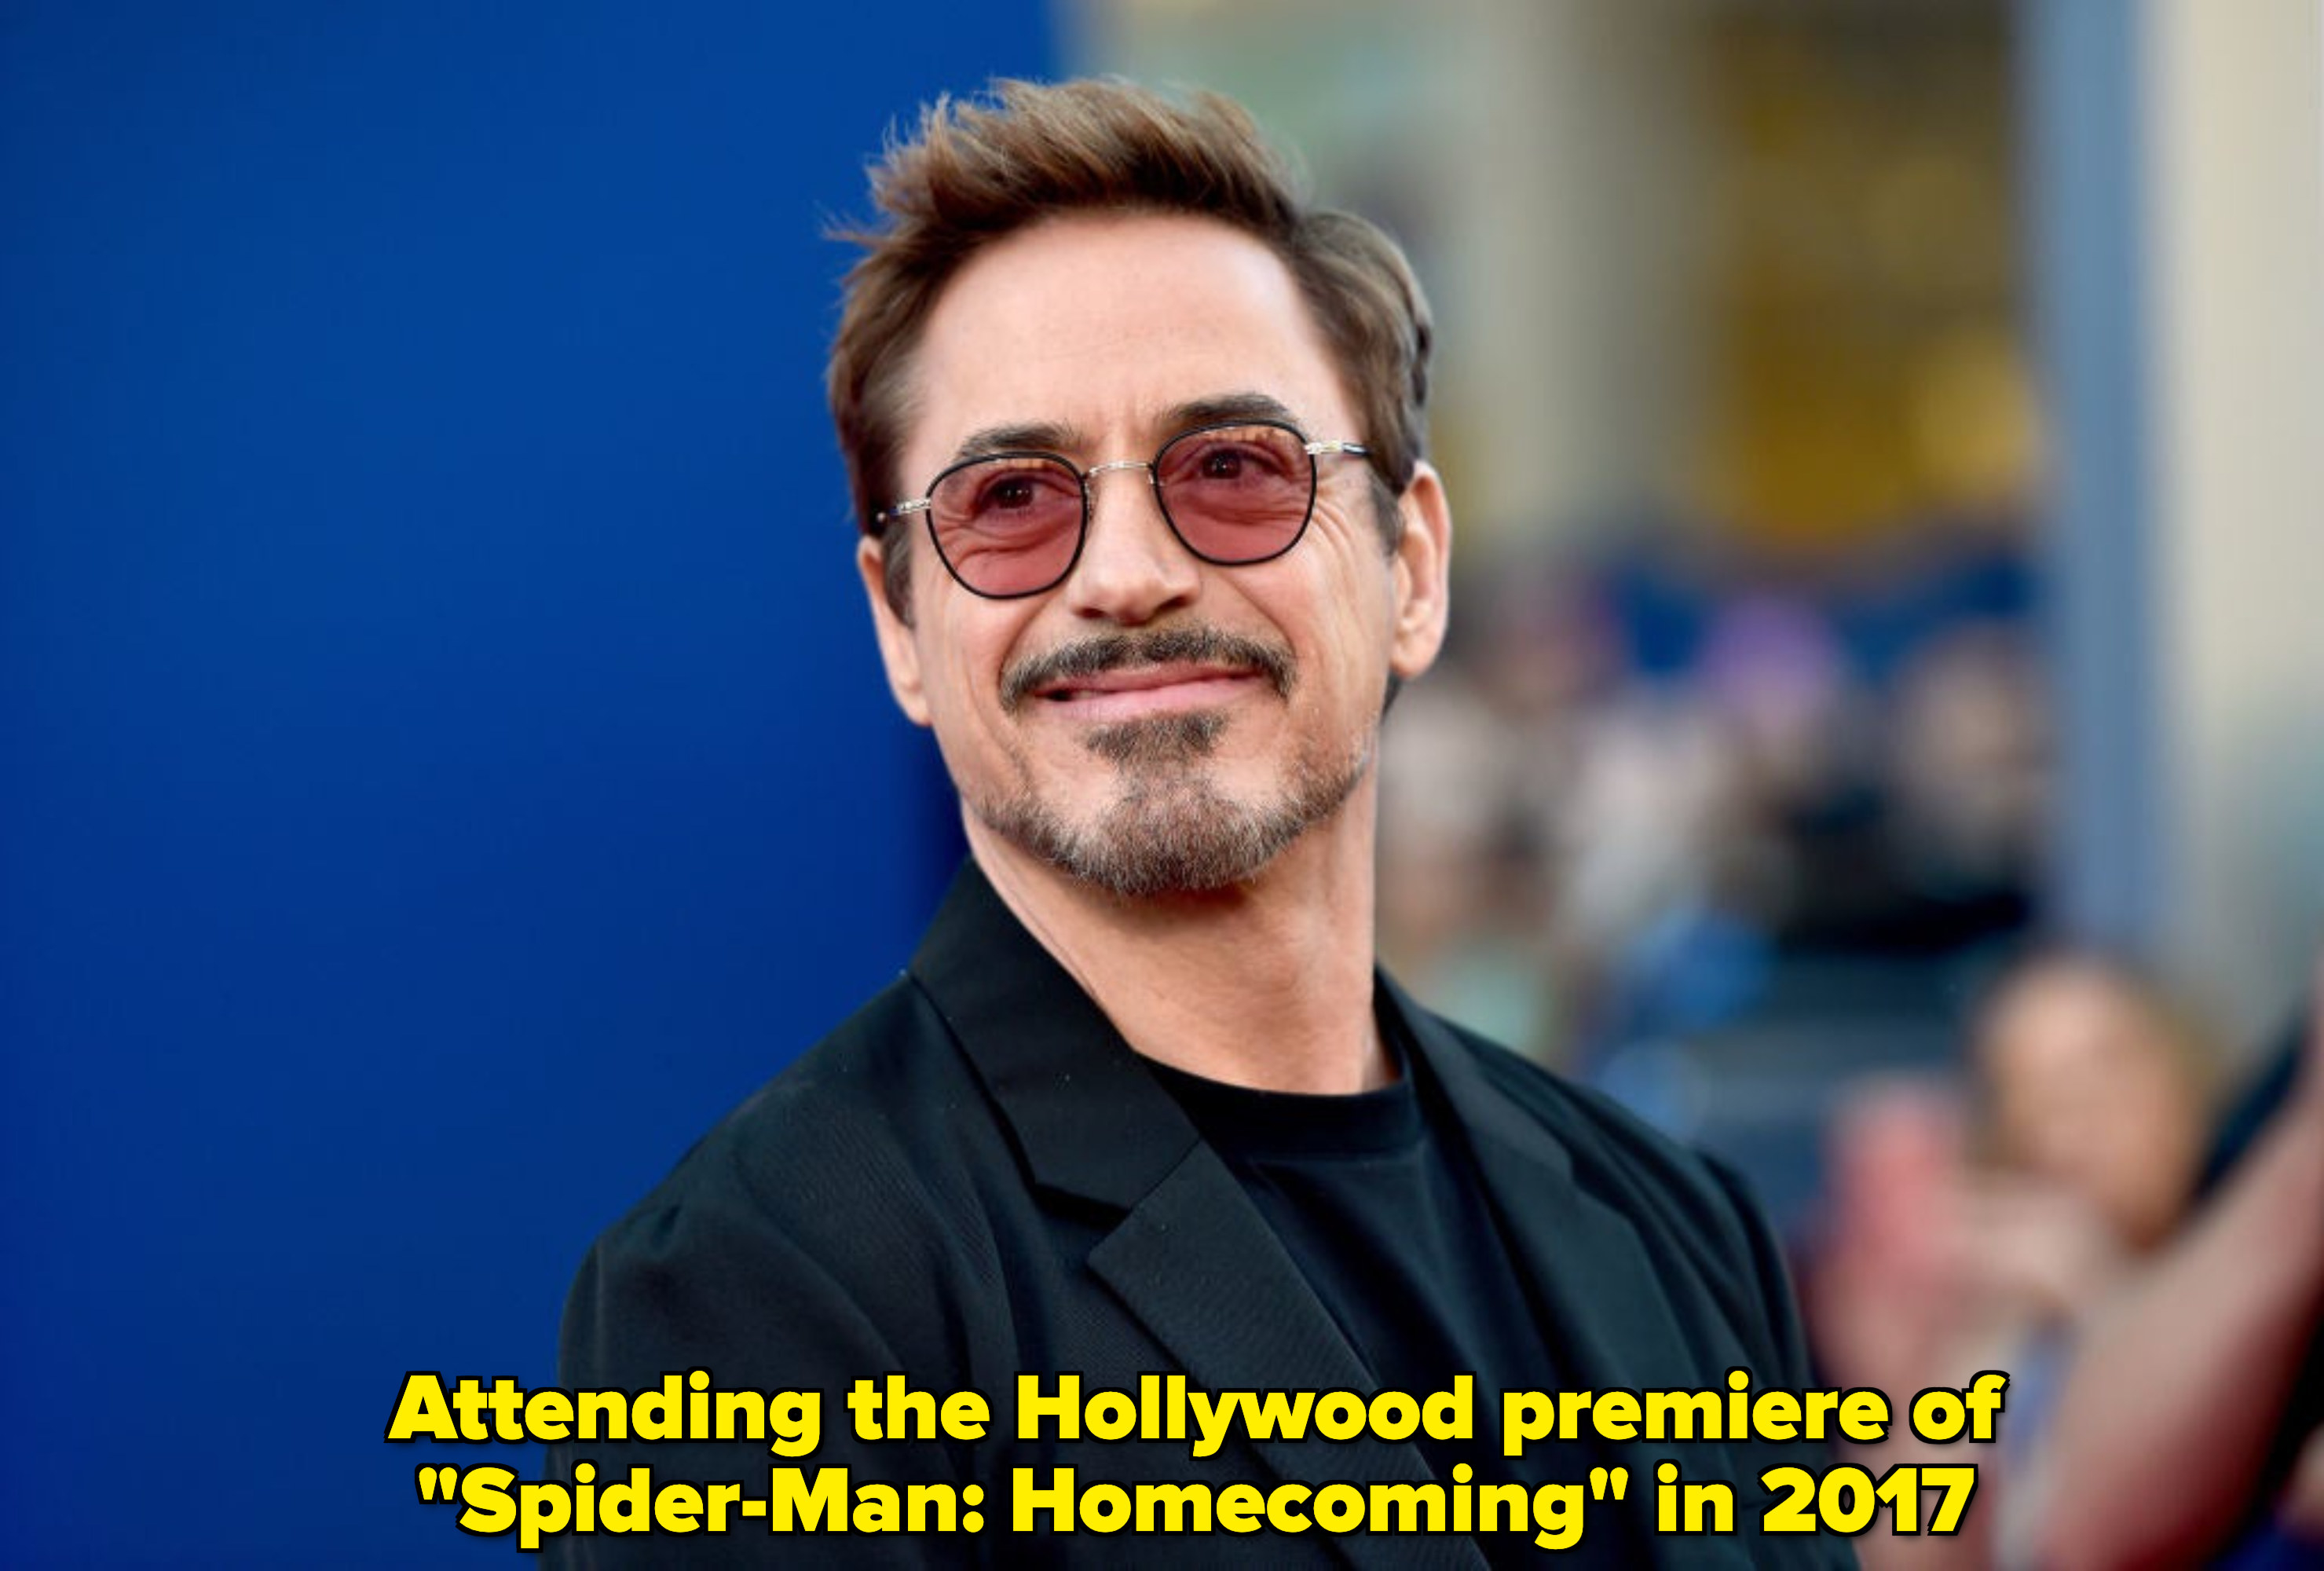 Robert Downey Jr smiling